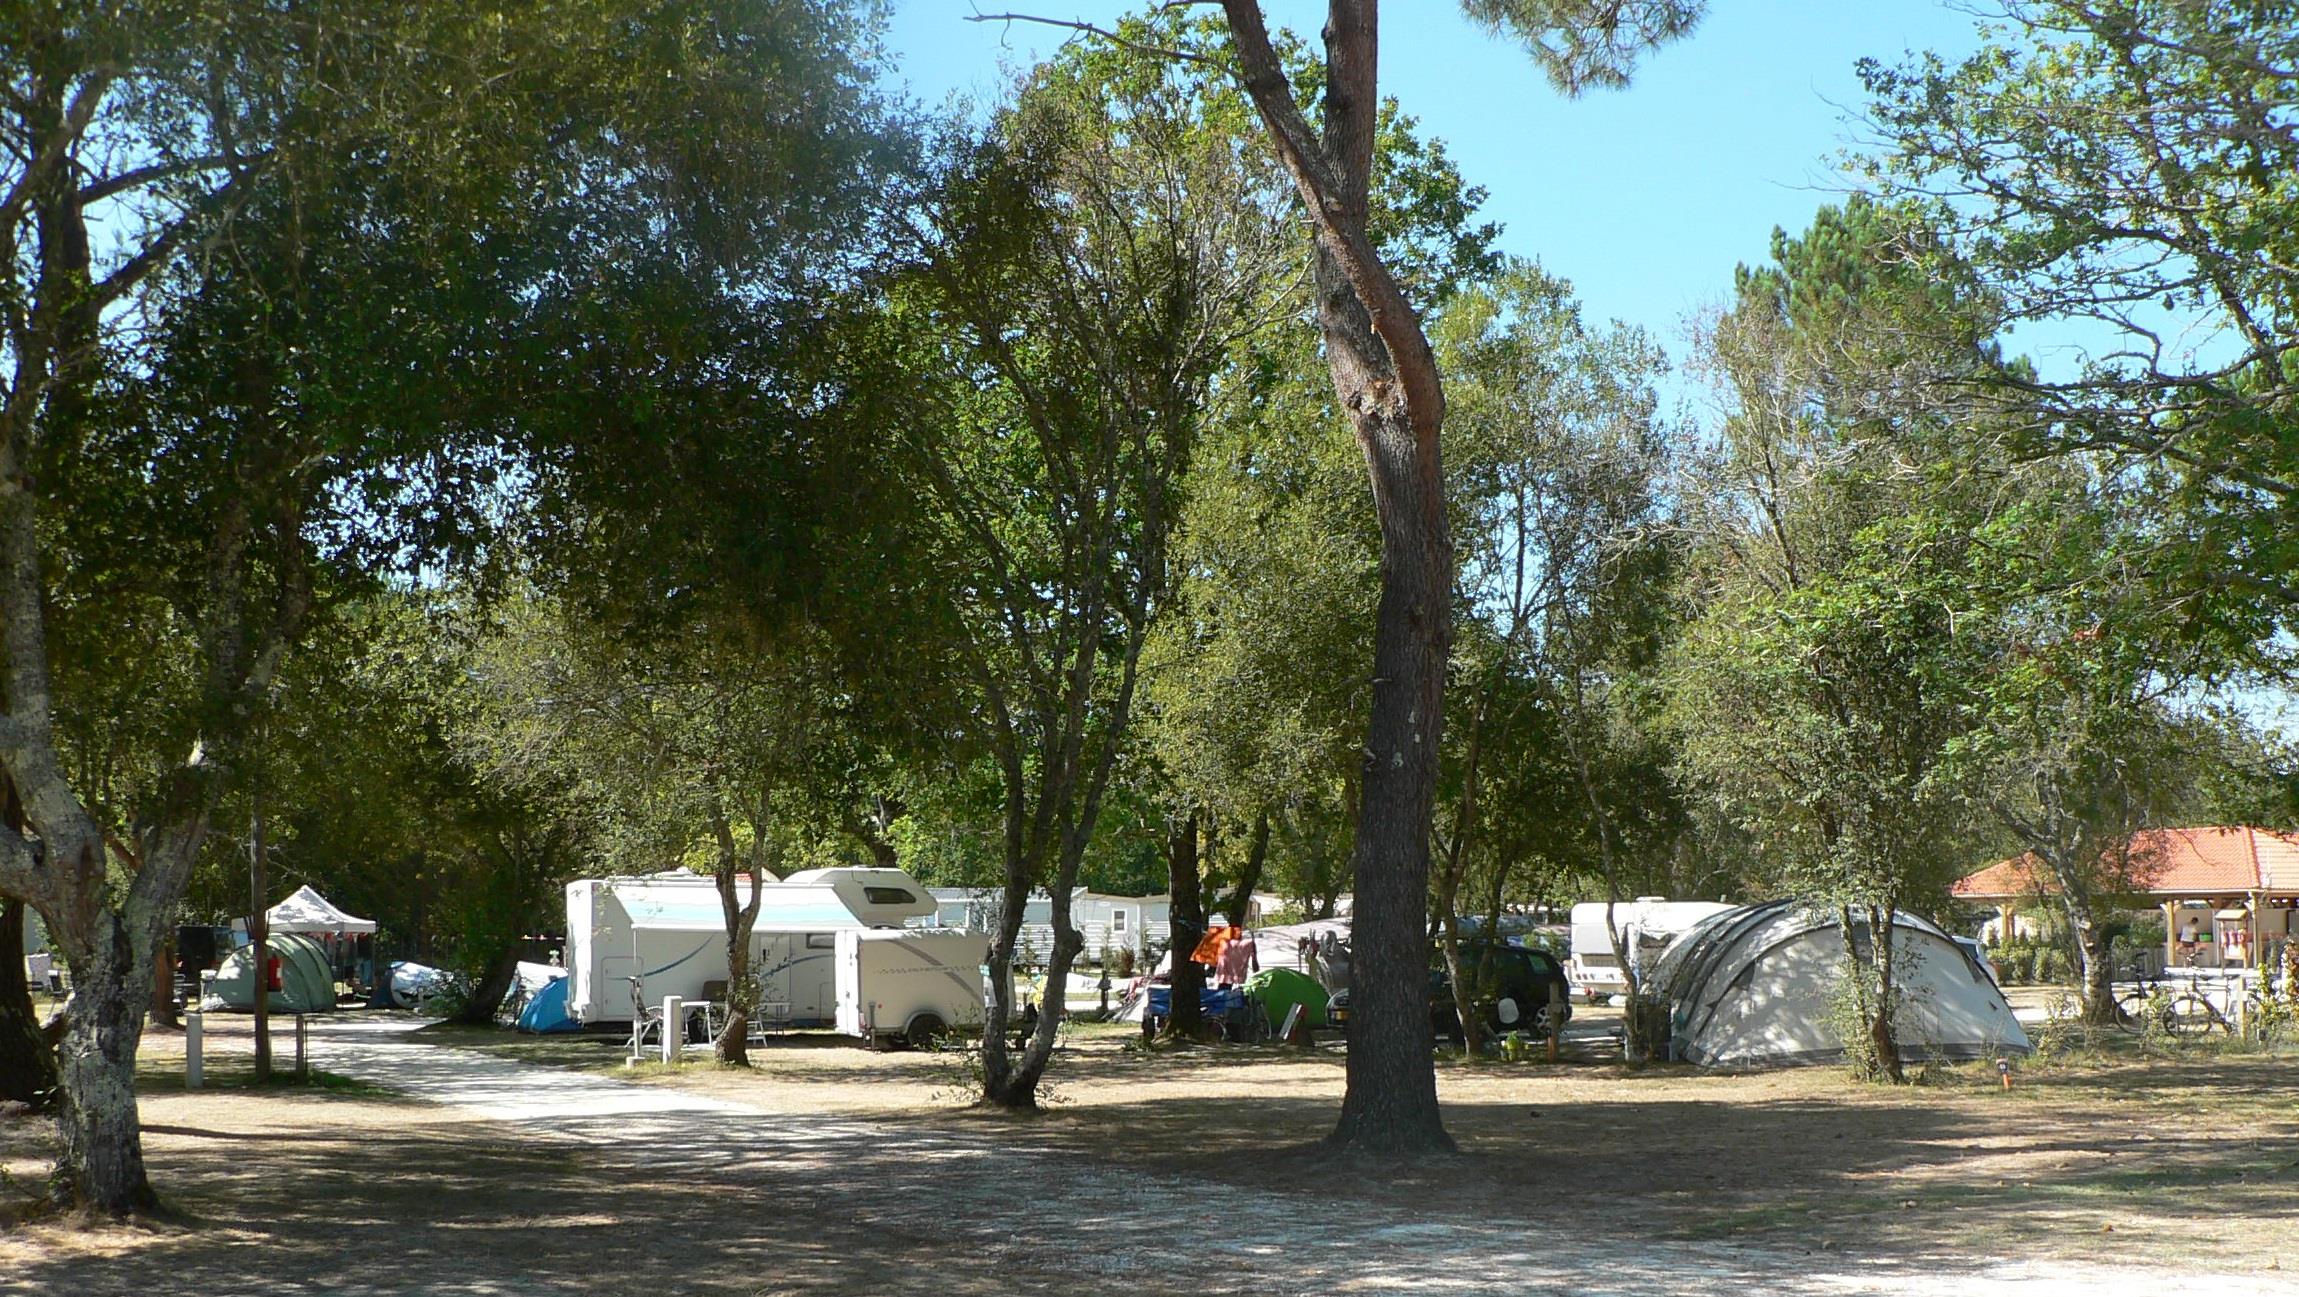 Basisprijs Comfortplaats (1 tent, caravan of camper / 1 auto / elektriciteit 20A)